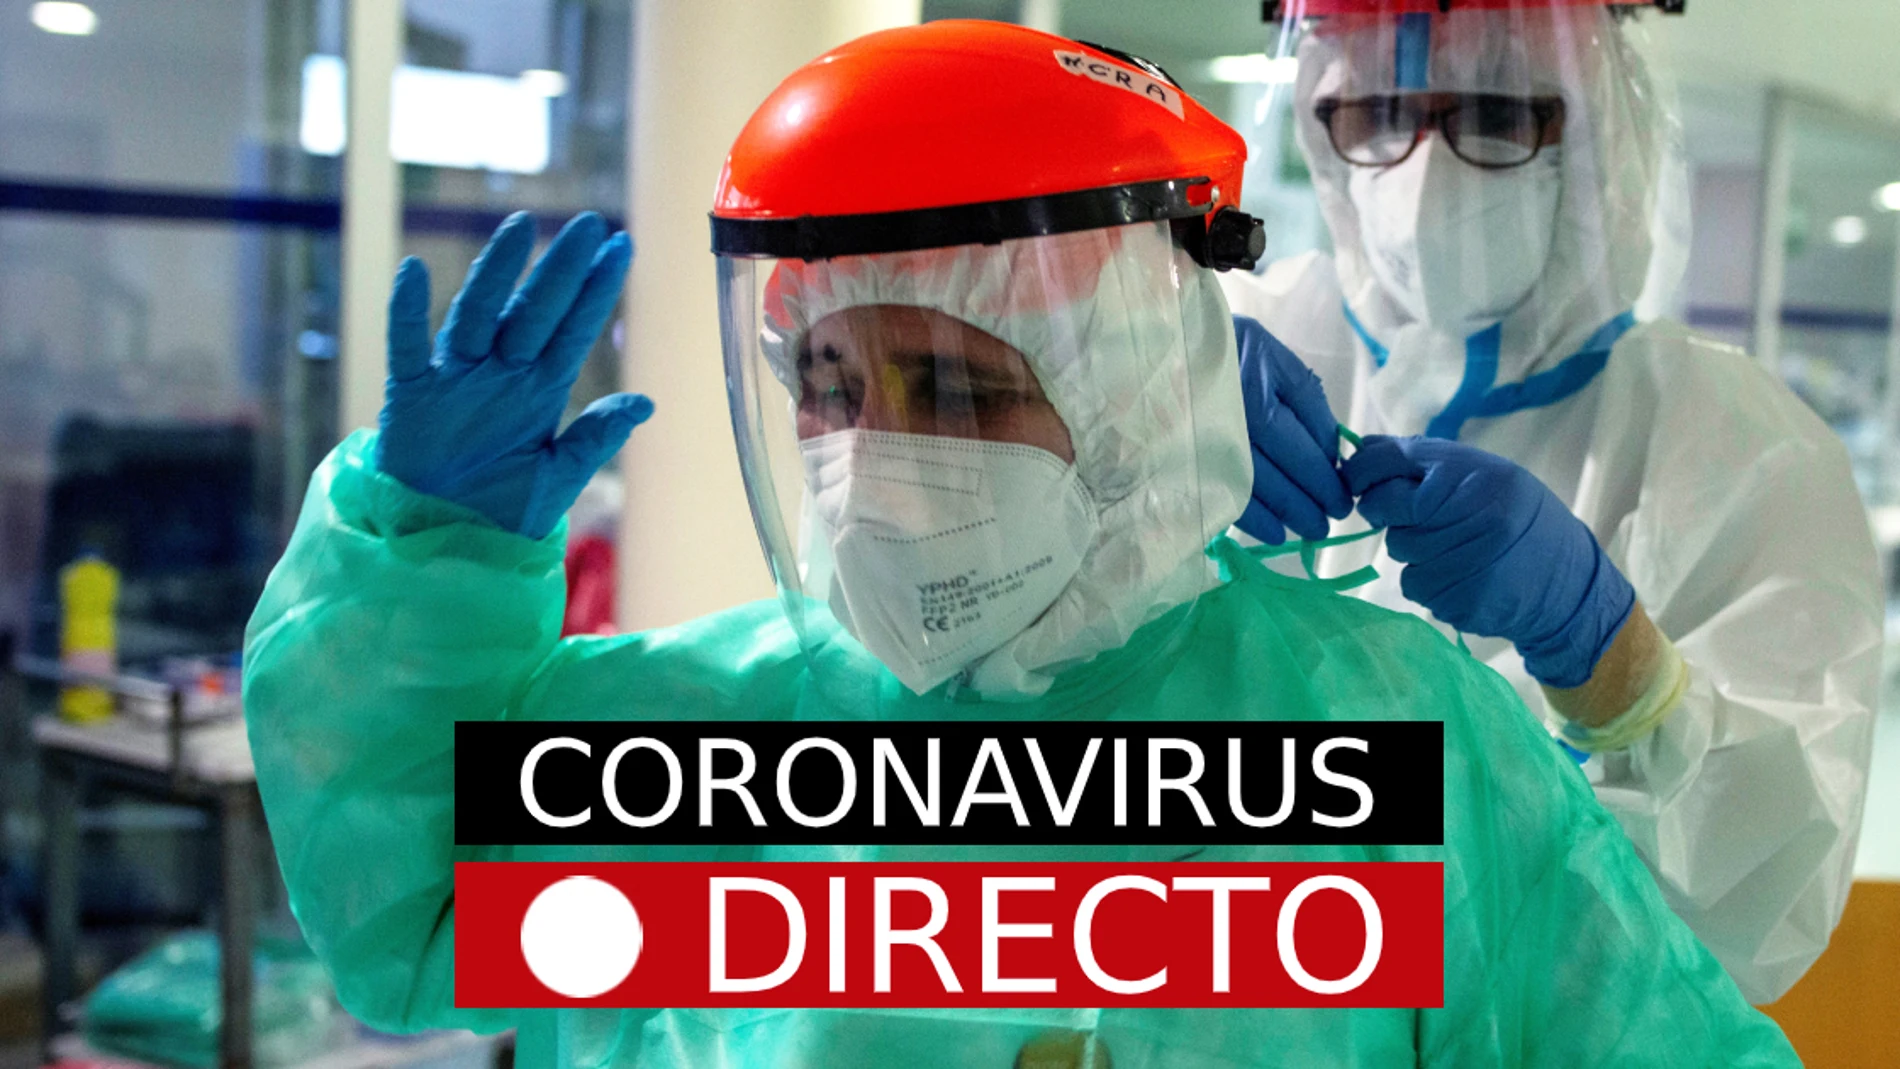 La última hora de la pandemia de coronavirus, en directo en laSexta.com